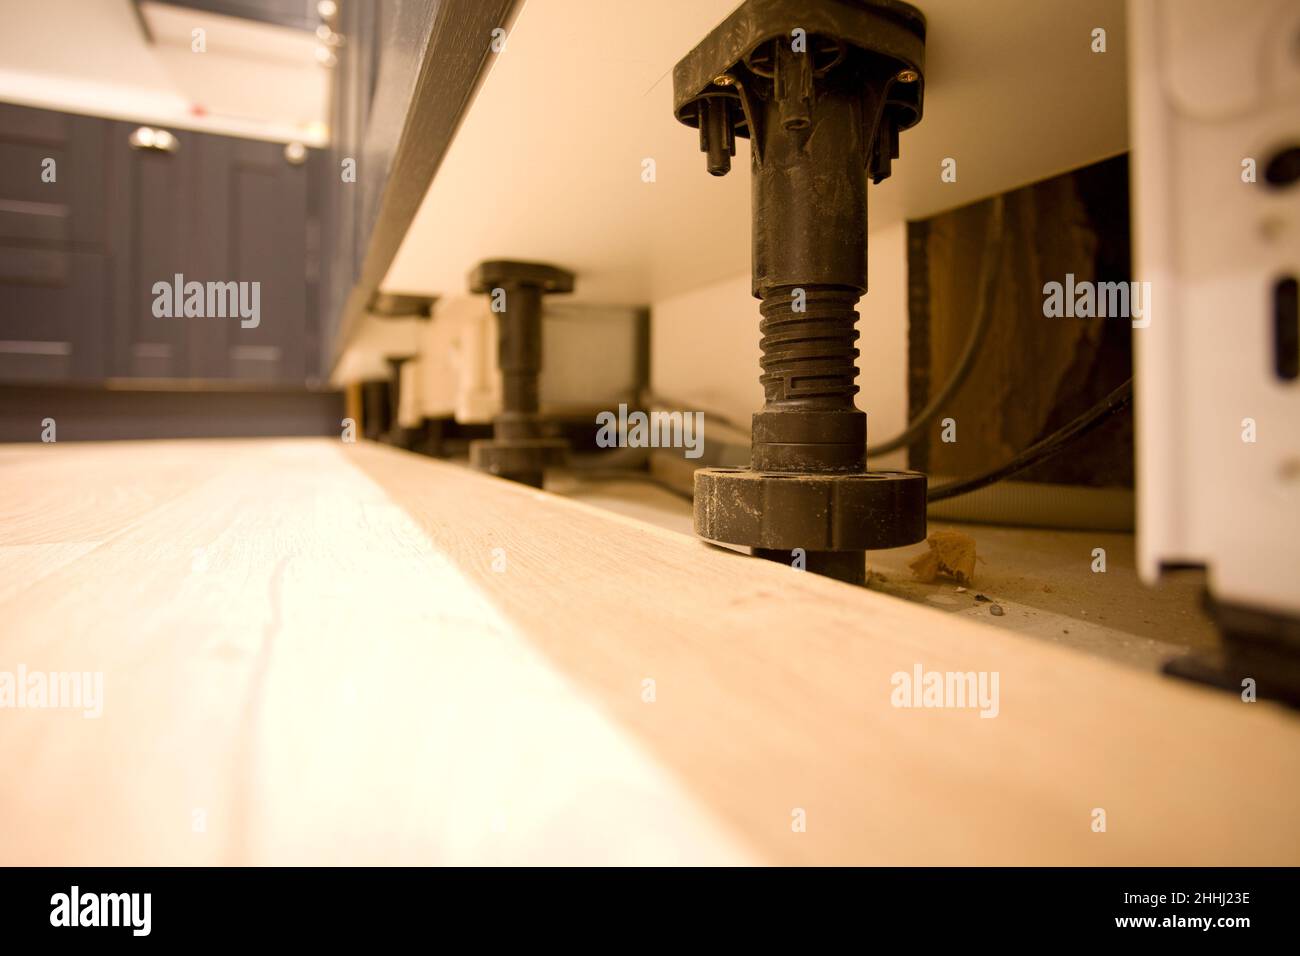 Adjustable plinth feet in kitchen. uk Stock Photo